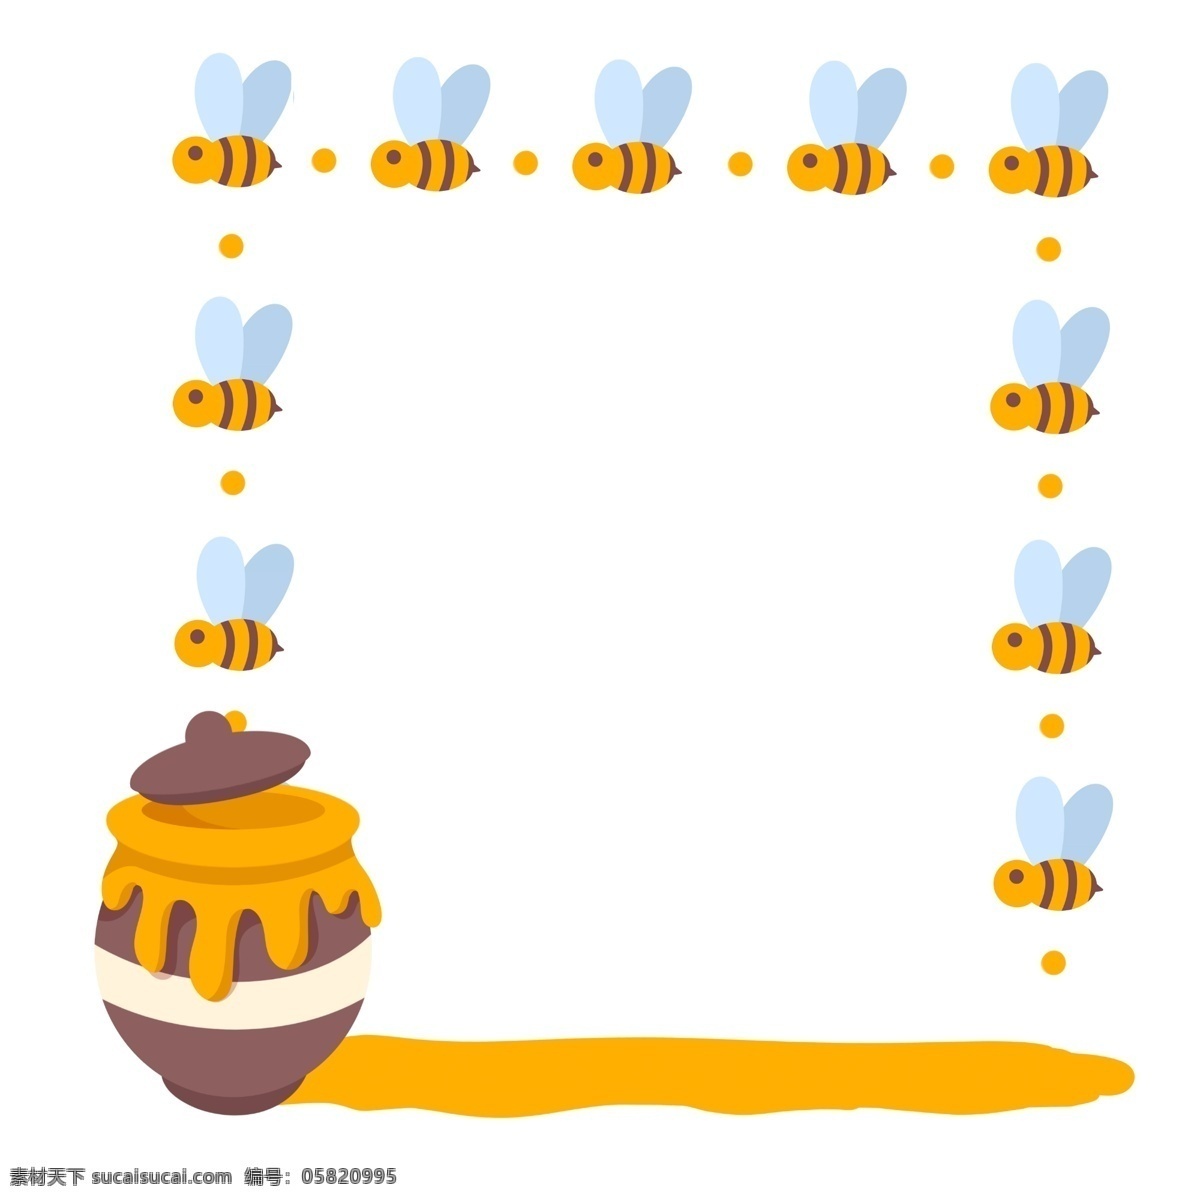 飞舞 蜜蜂 蜂蜜 边框 飞舞的蜜蜂 卡通边框 小物边框 漂亮的边框 美丽的边框 创意边框 可爱的蜜蜂